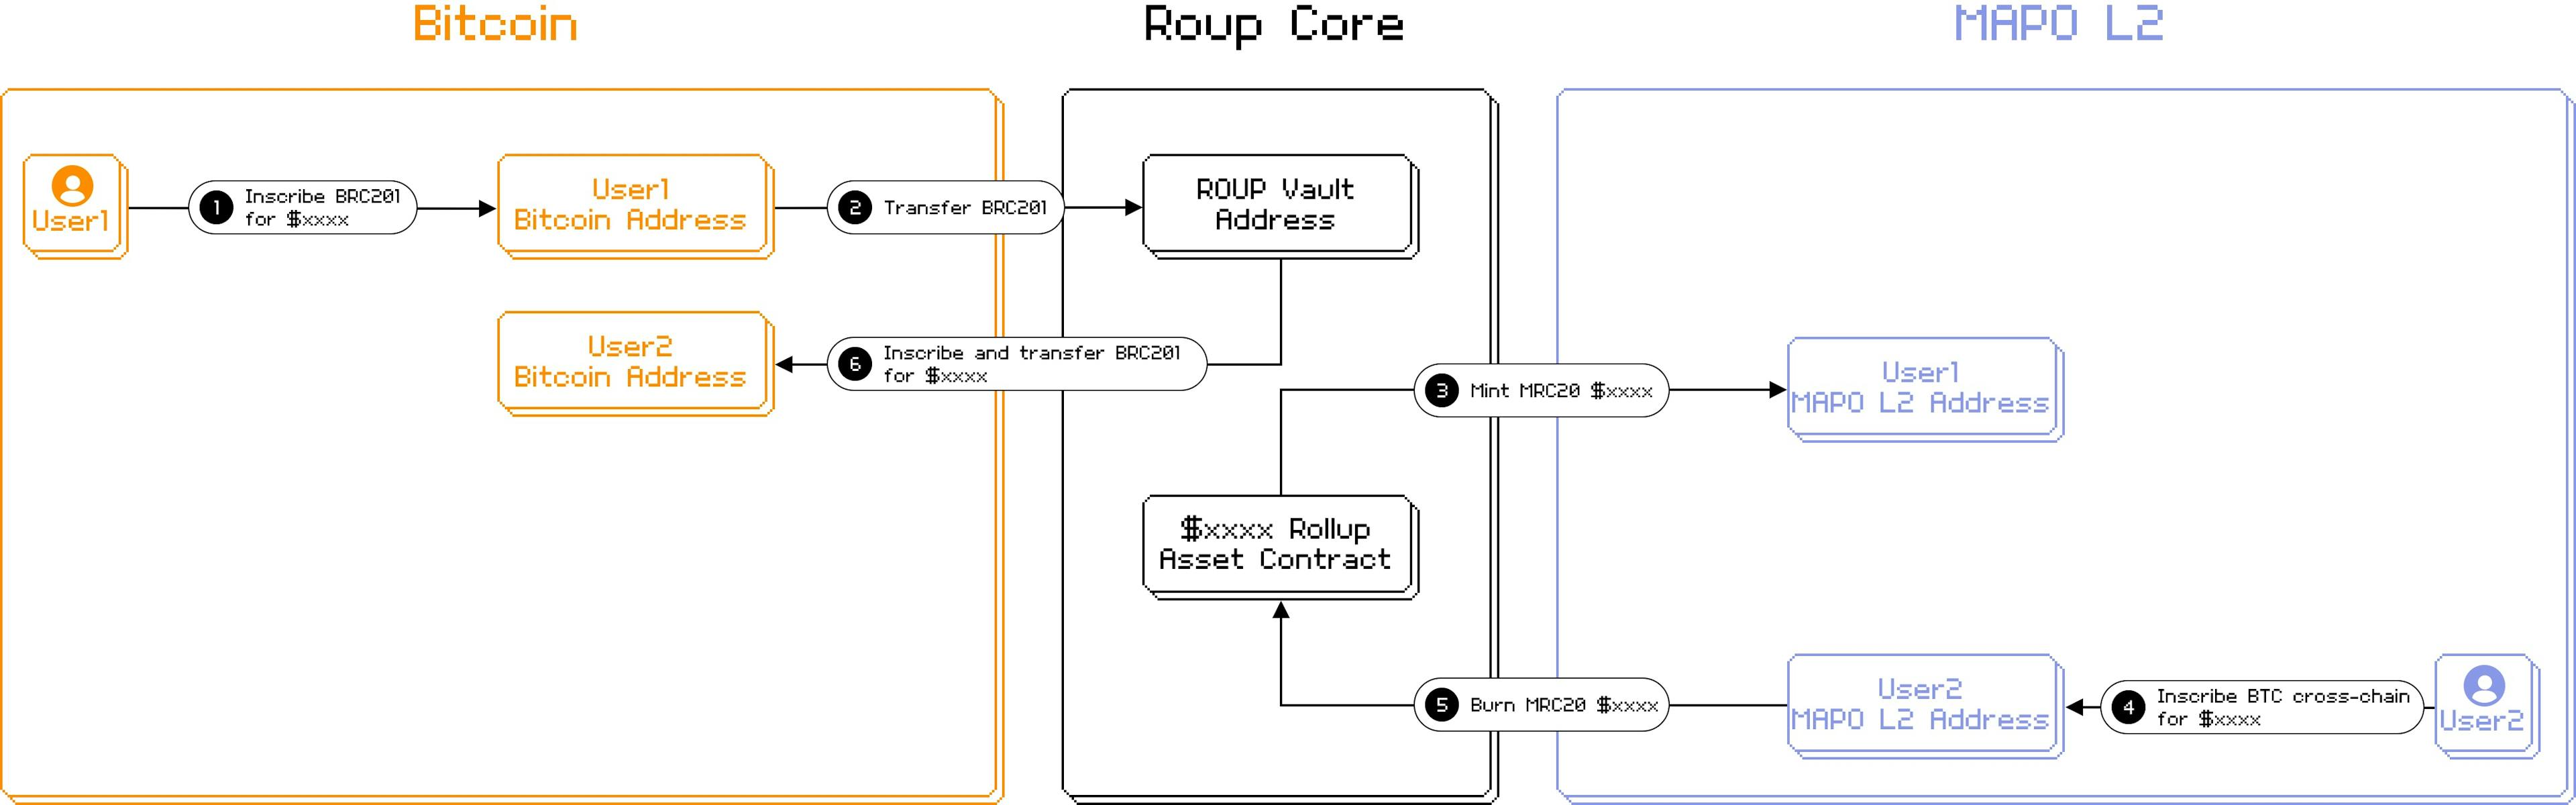 来源：https://docs.rolluper.xyz/how-does-roup-work/tech-workflow